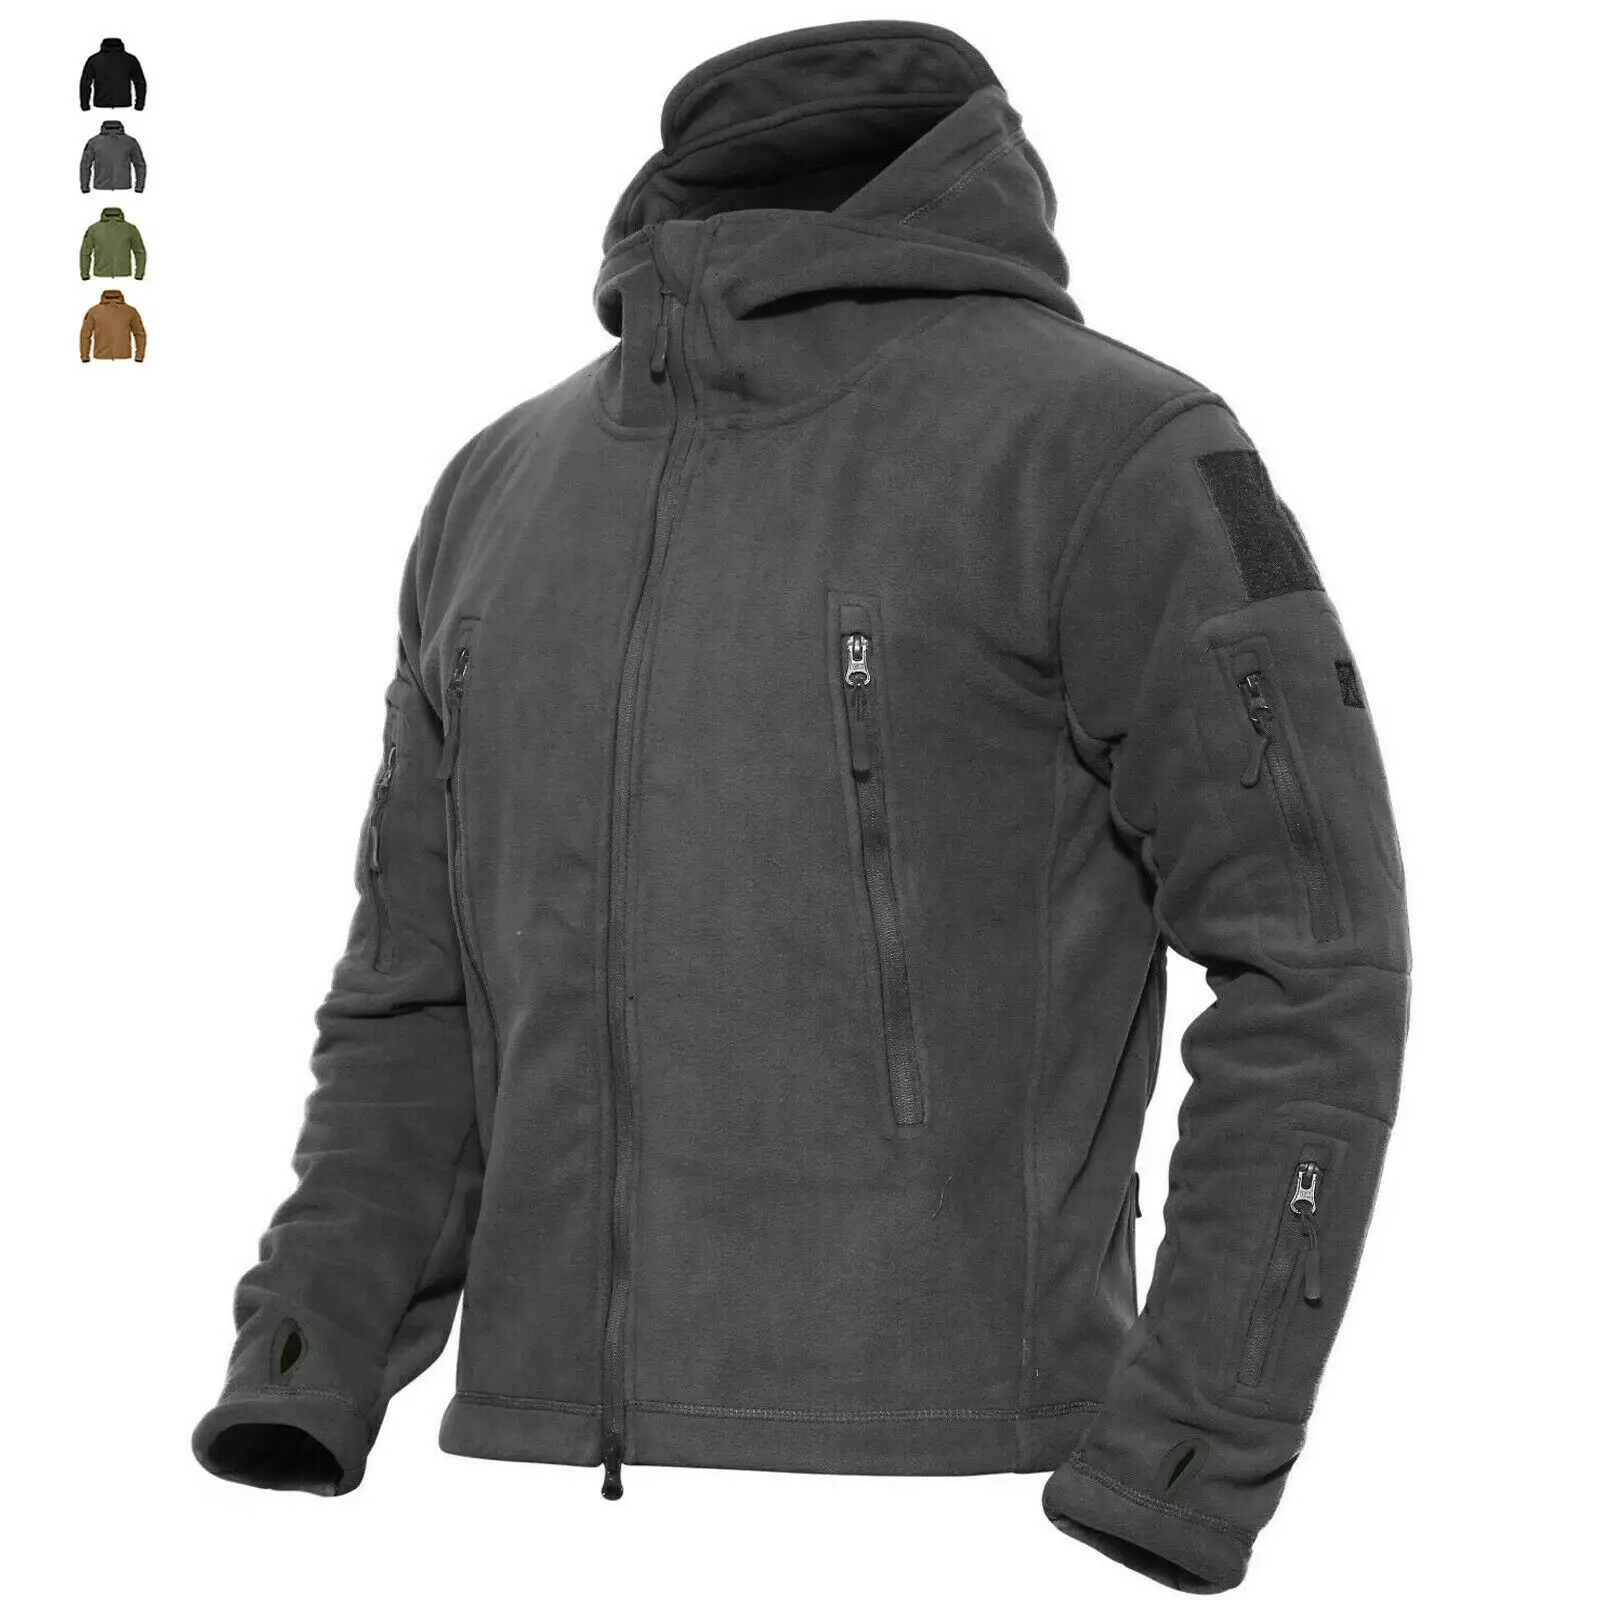 Tactical Jacket Men Winter Waterproof Hooded Outdoor Coat New